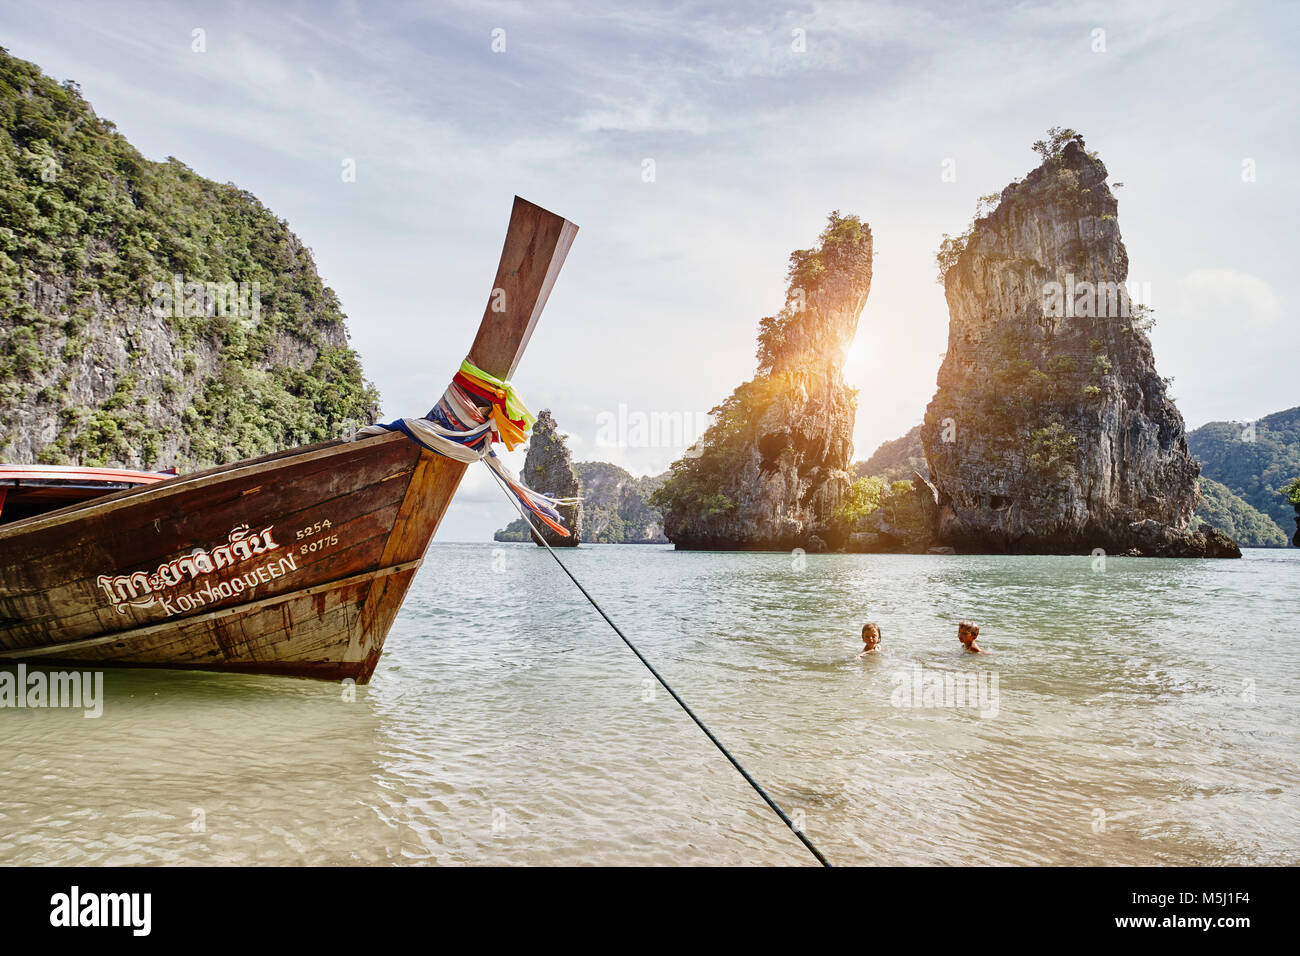 Thailand, Phang Nga Bay, moored long-tail boat Stock Photo